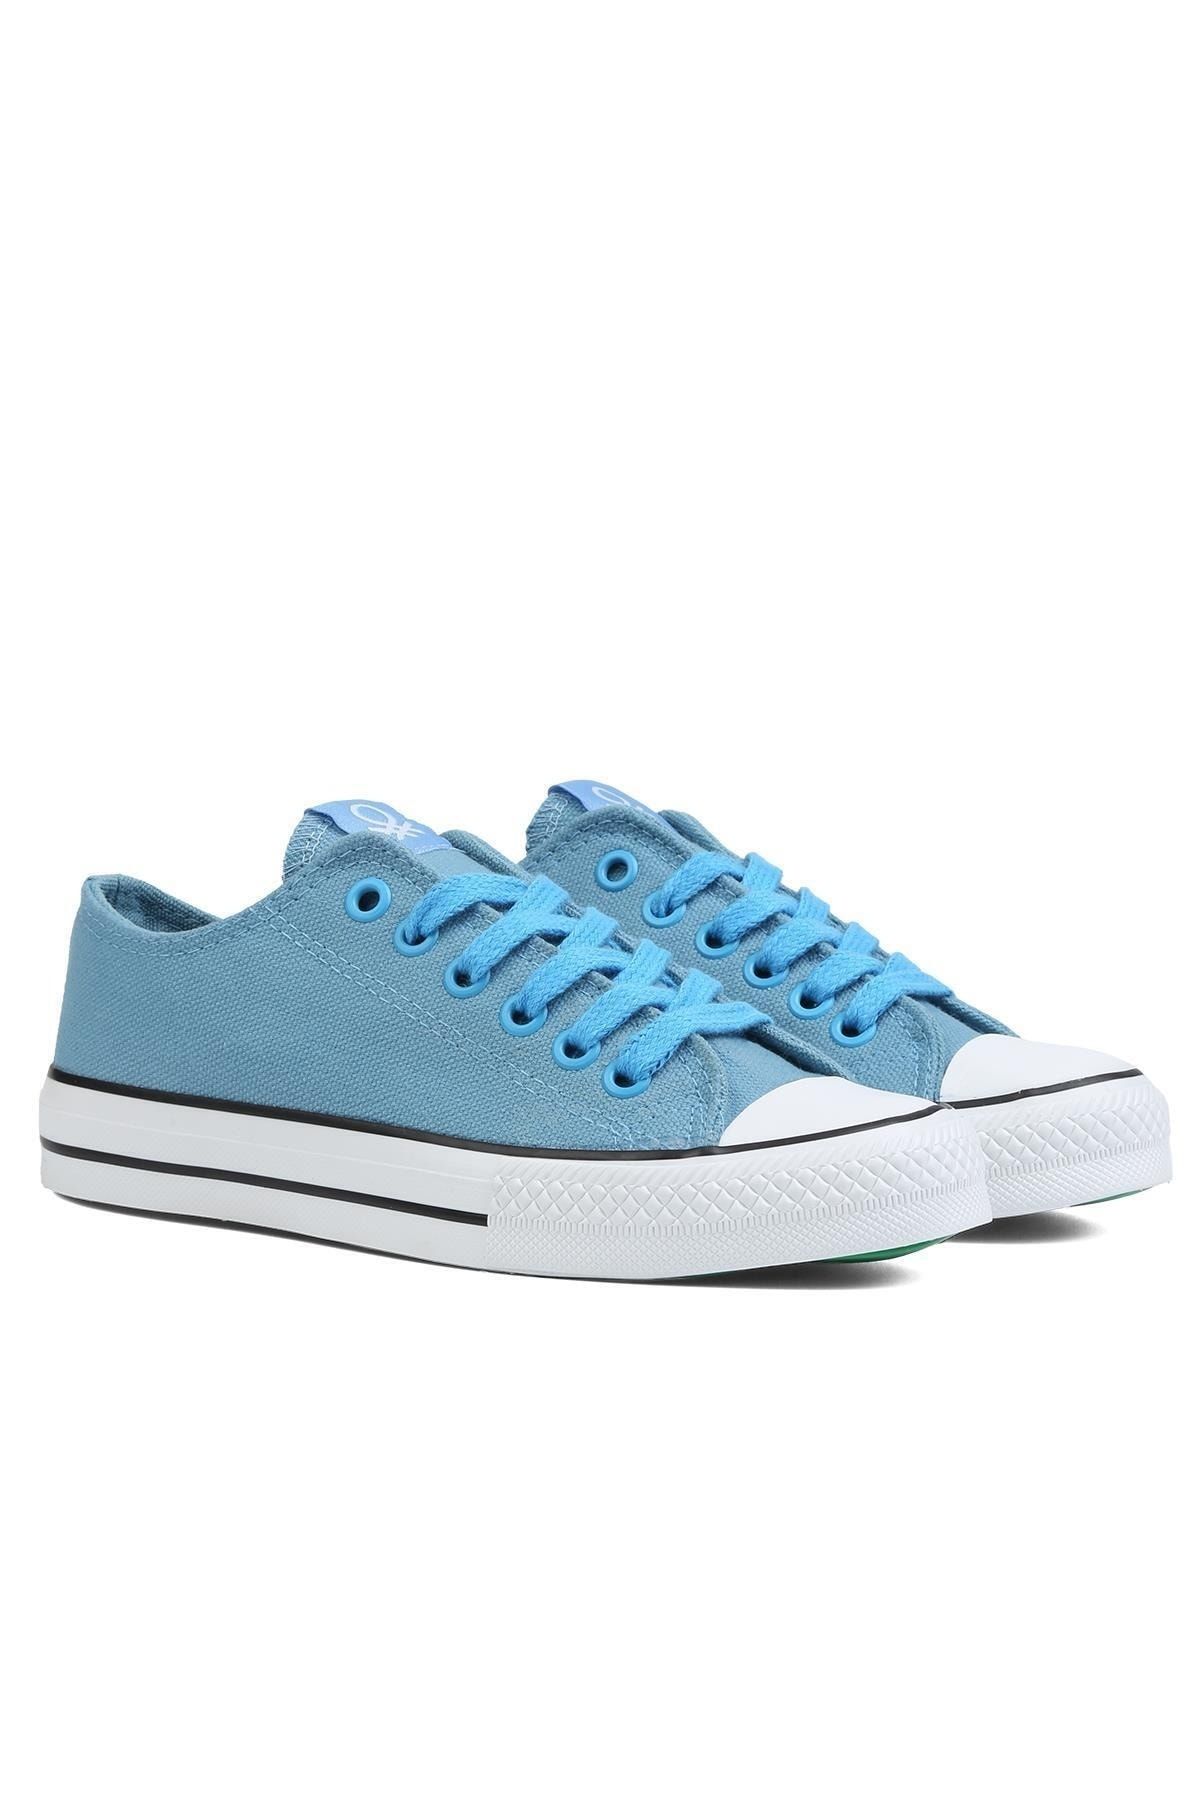 Benetton ® | BN-90196 - Acik Mavi - Kadın Spor Ayakkabı